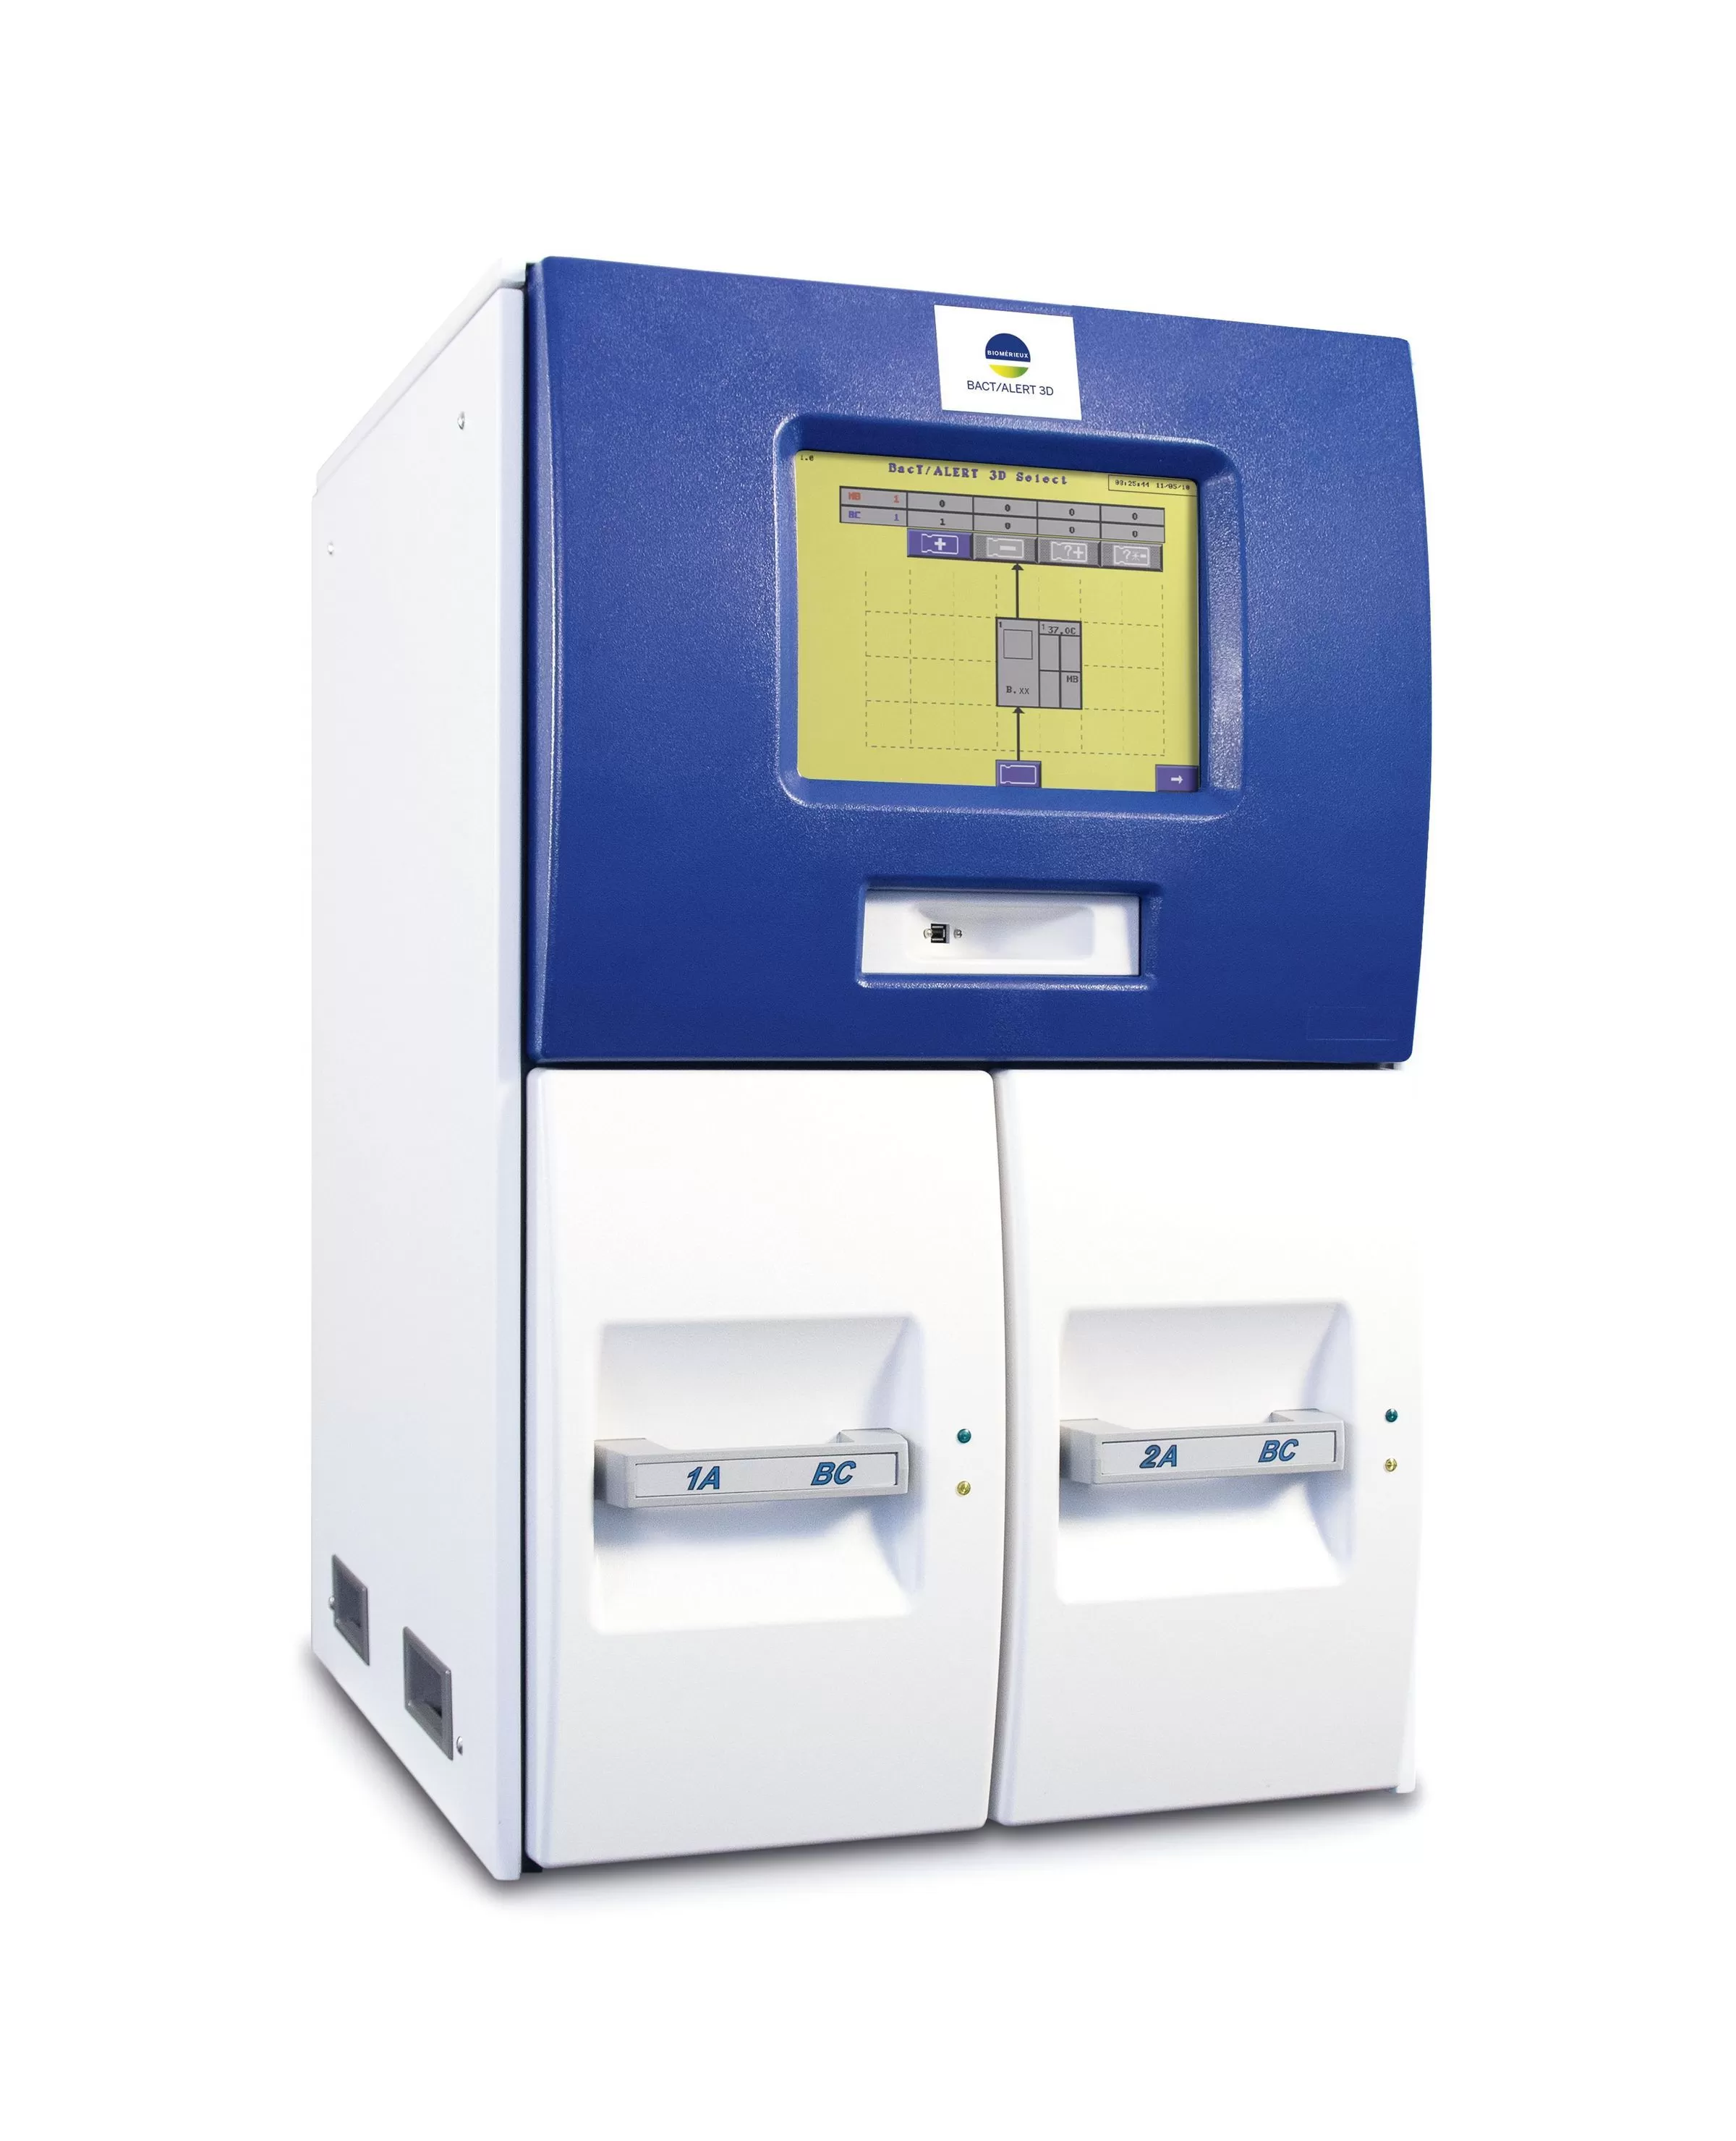 Анализатор культур крови автоматический бактериологический BACT/ALERT 3D 120